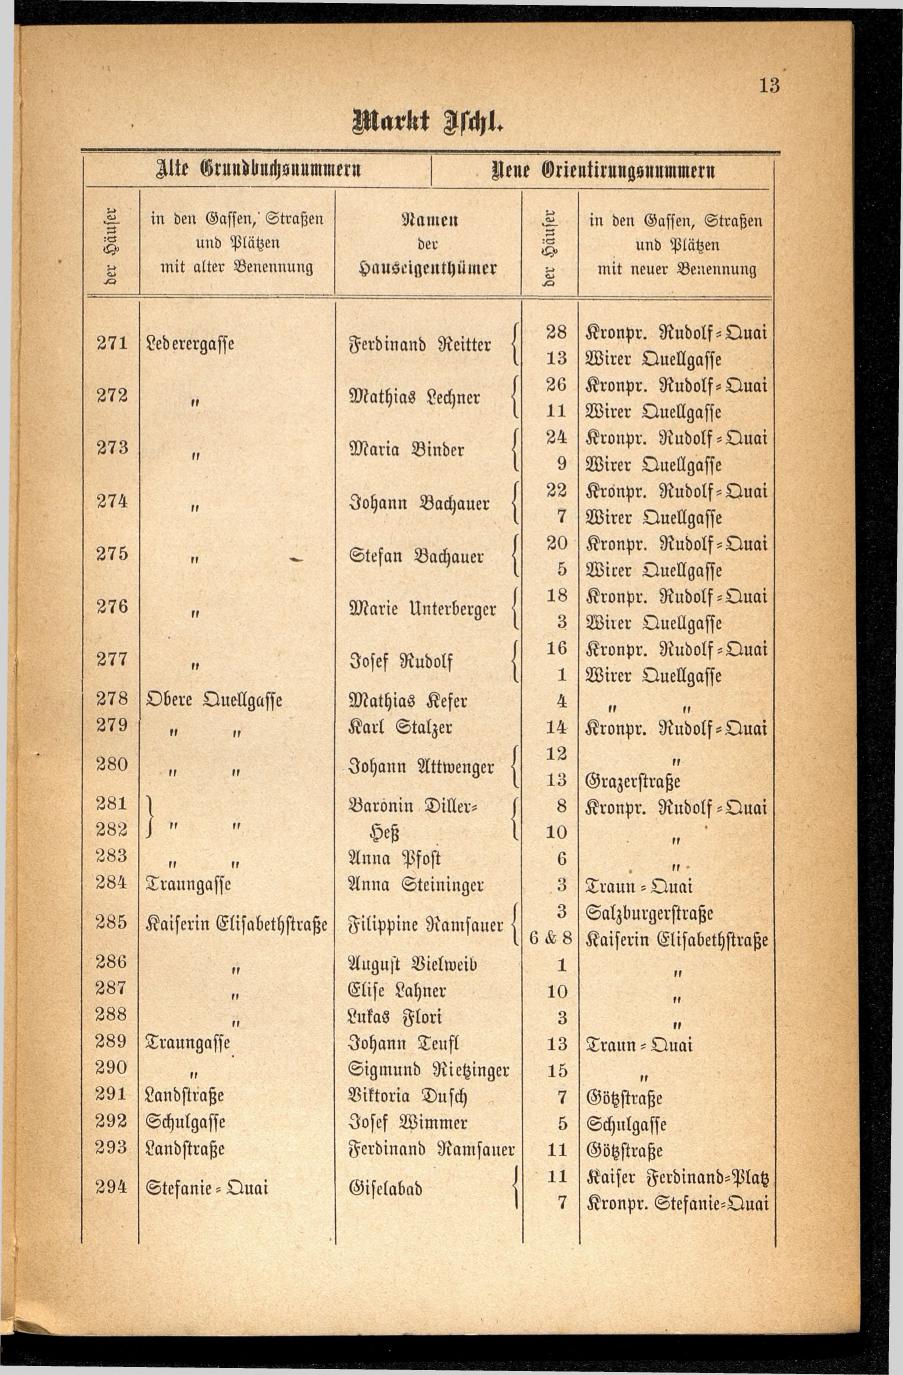 Häuser-Verzeichnis des Marktes und Kurortes Ischl nach den neuen Orientirungsnummern 1881 - Seite 17